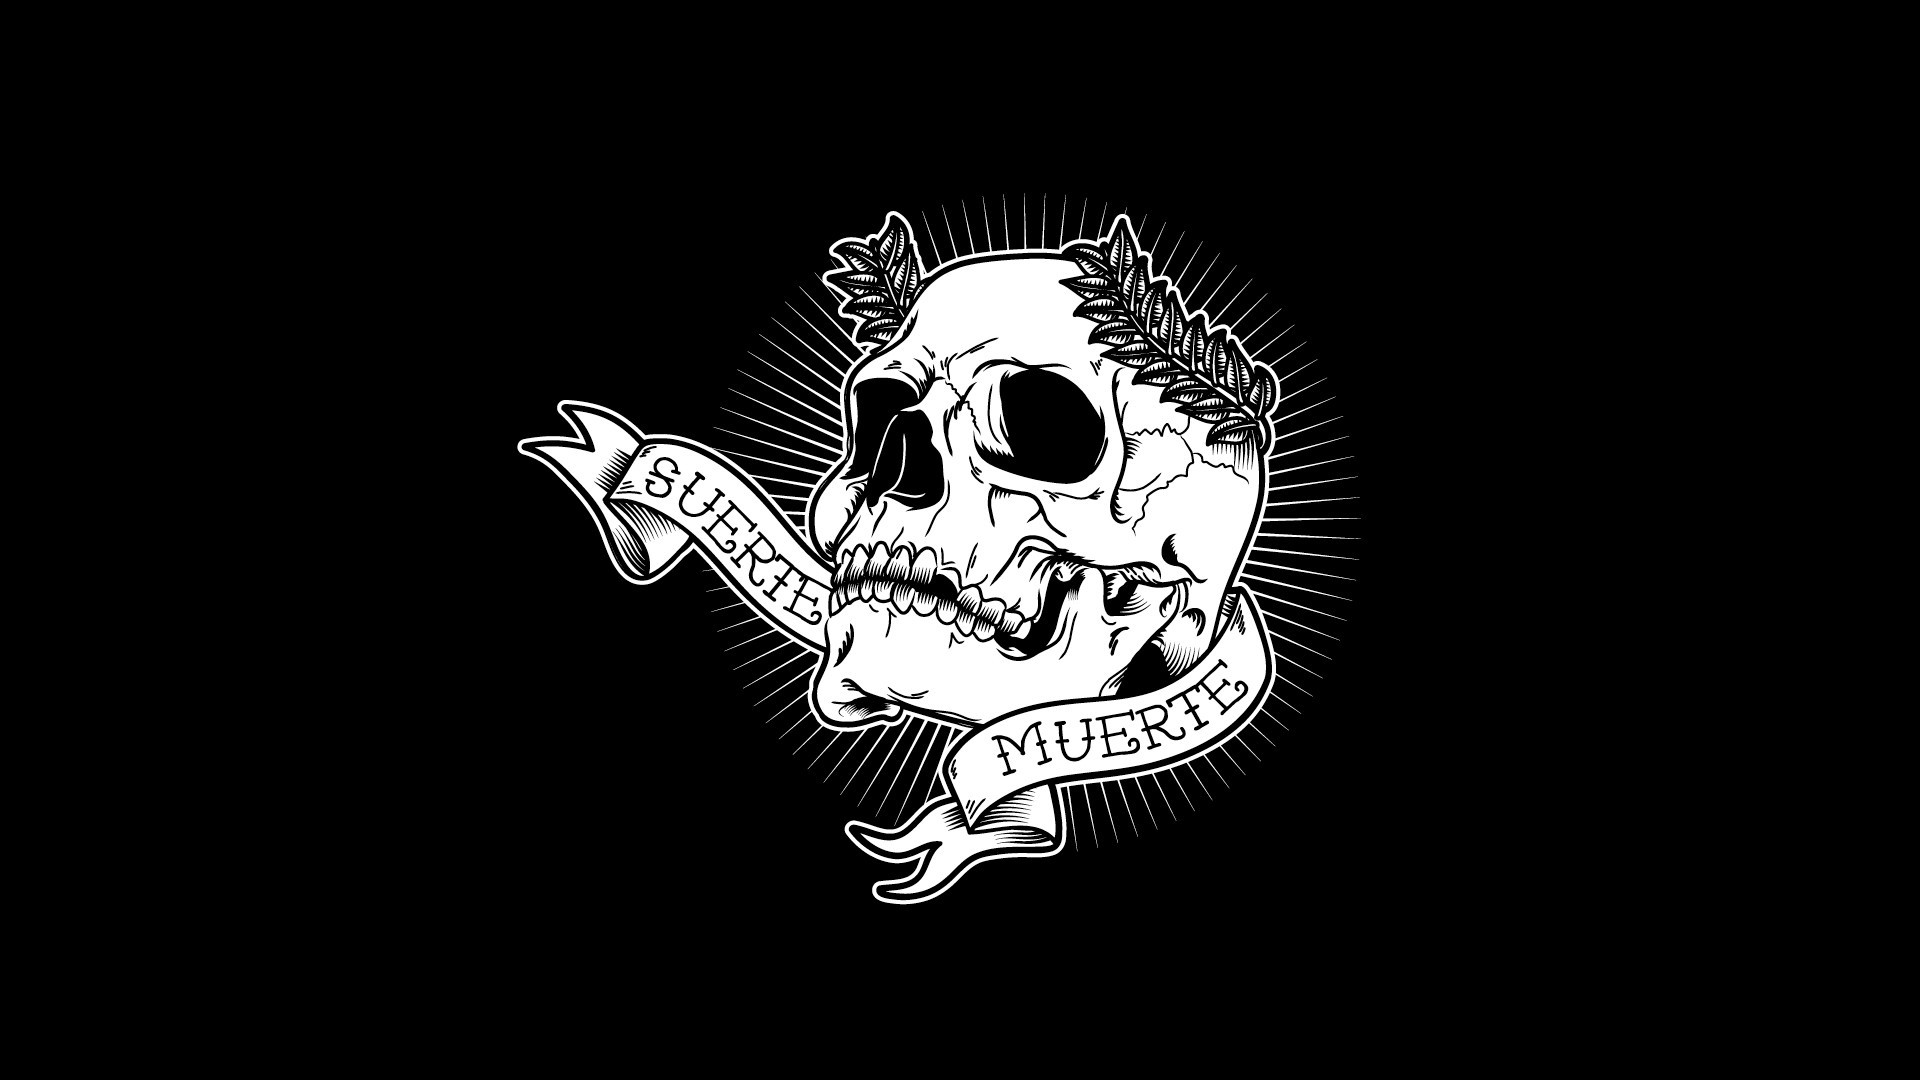 cool skeleton wallpapers,skull,bone,illustration,logo,font